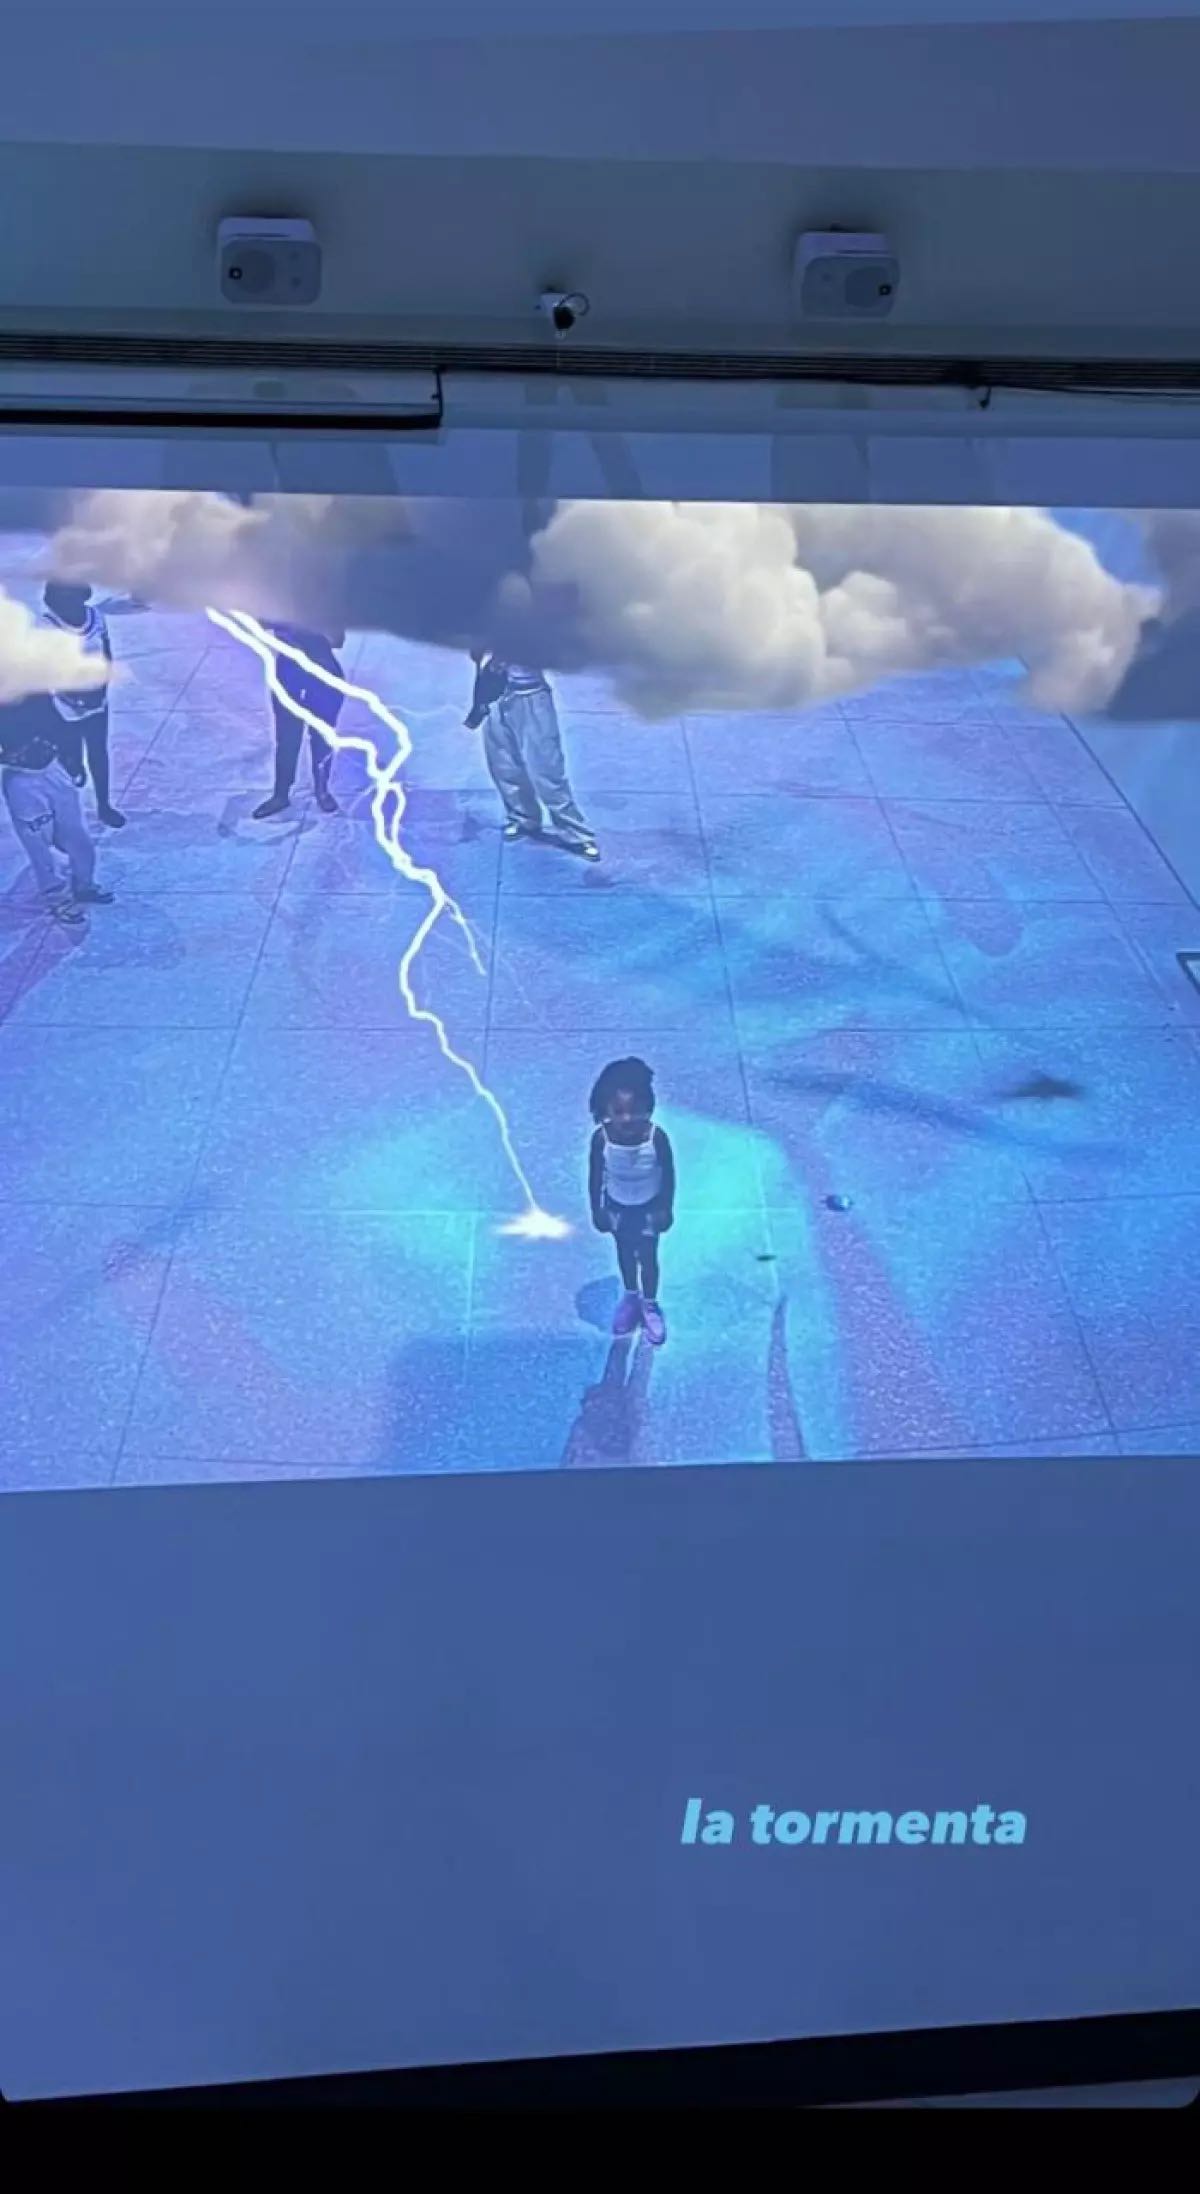 Kylie Jenner llamó 'la tormenta'a su hija